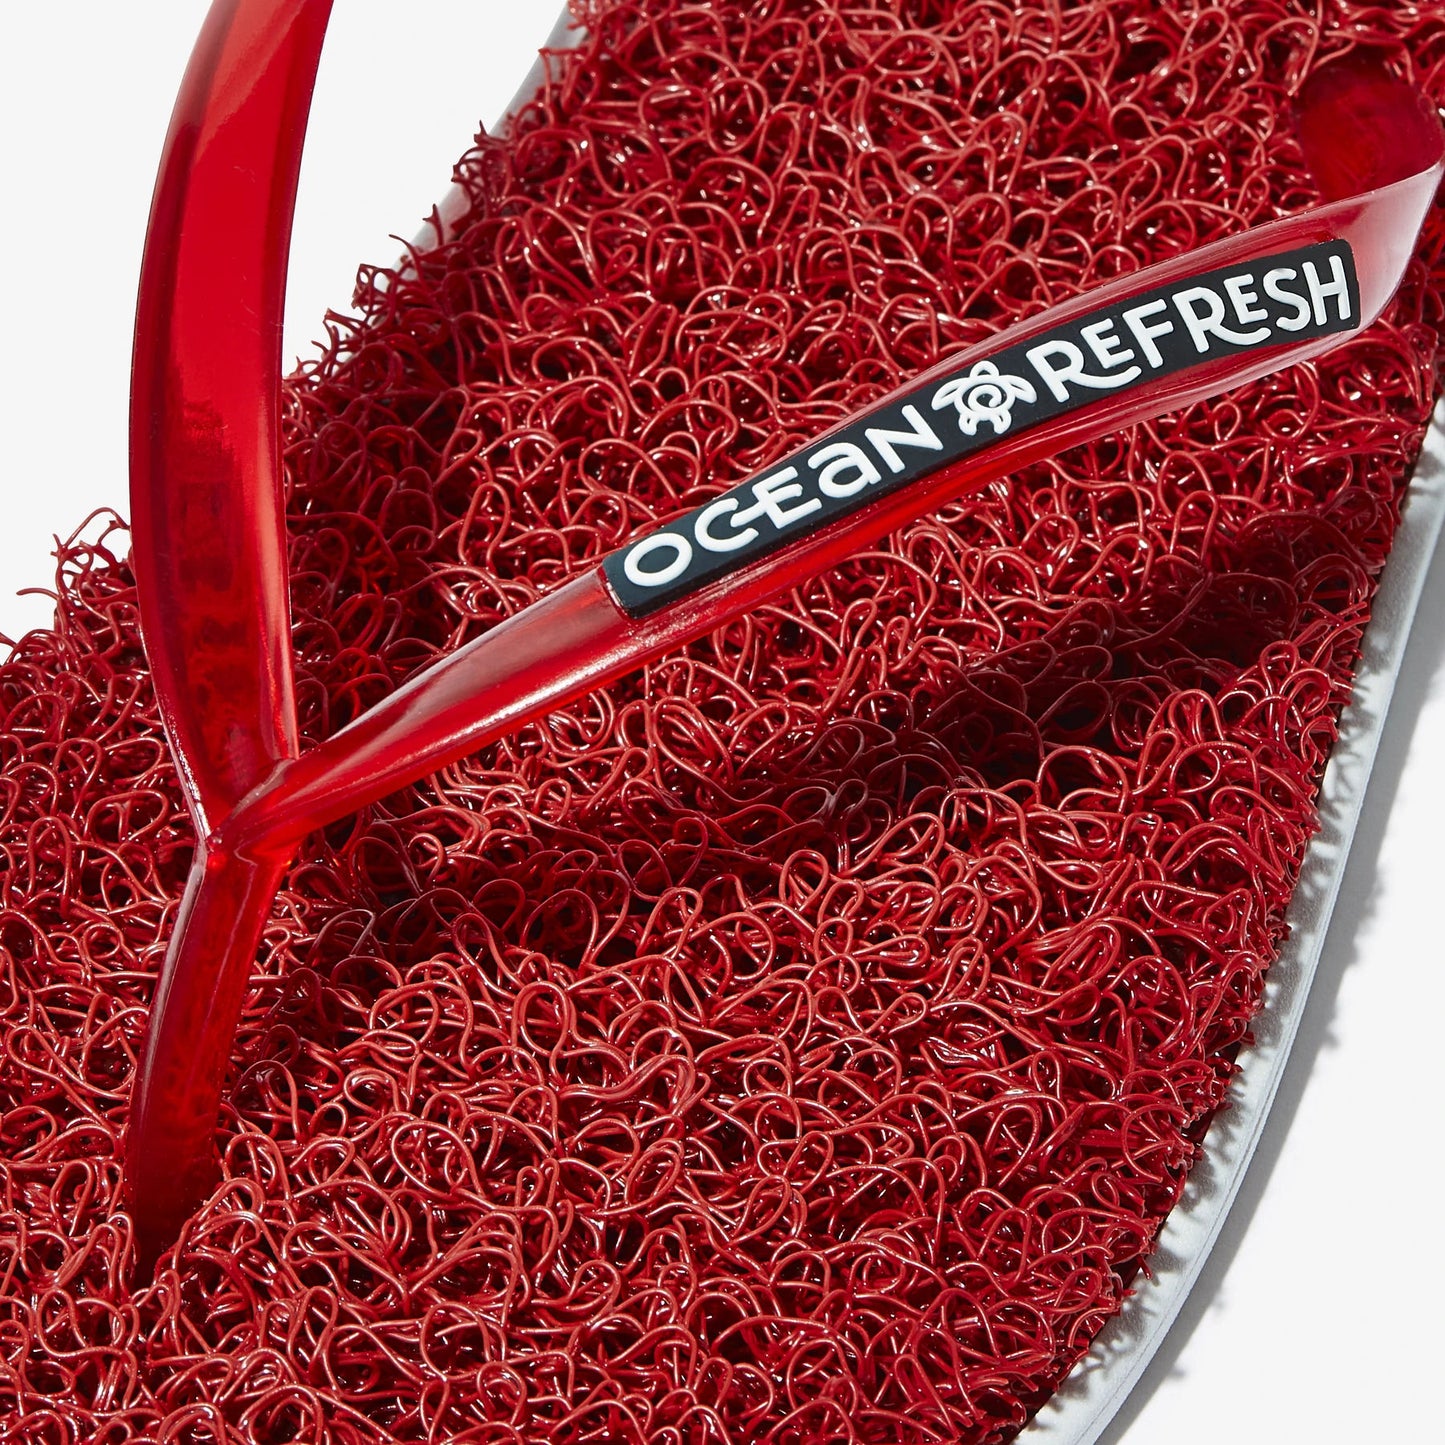 Ocean Refresh Womens Flip Flops - Coral Red